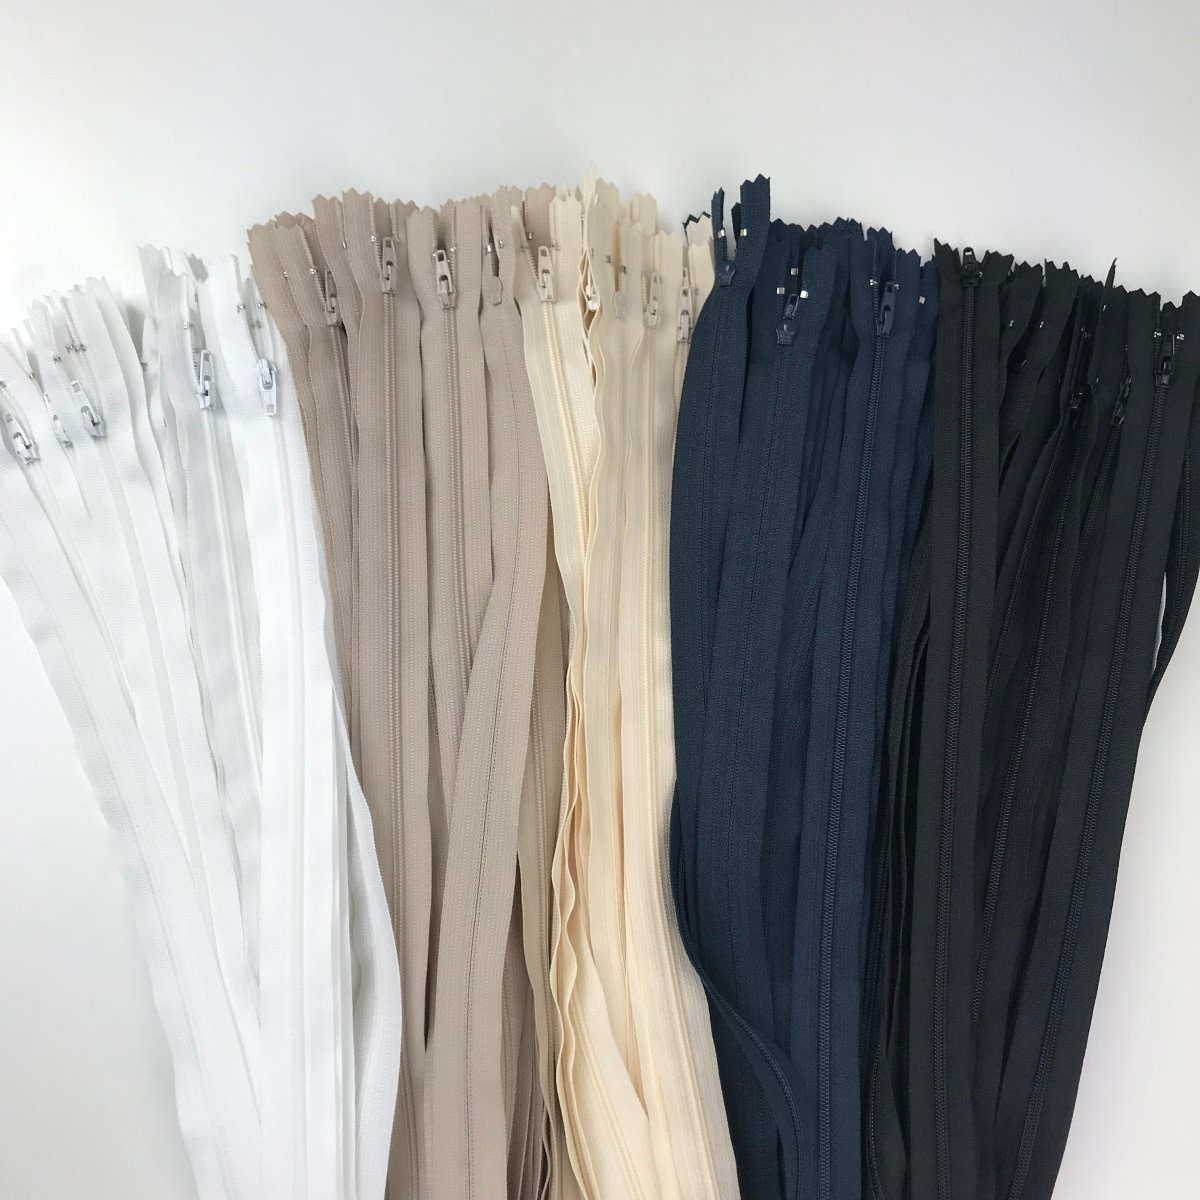 YKK Zipper - Skirt and Dress - 51cm (20") - Sewing Gem